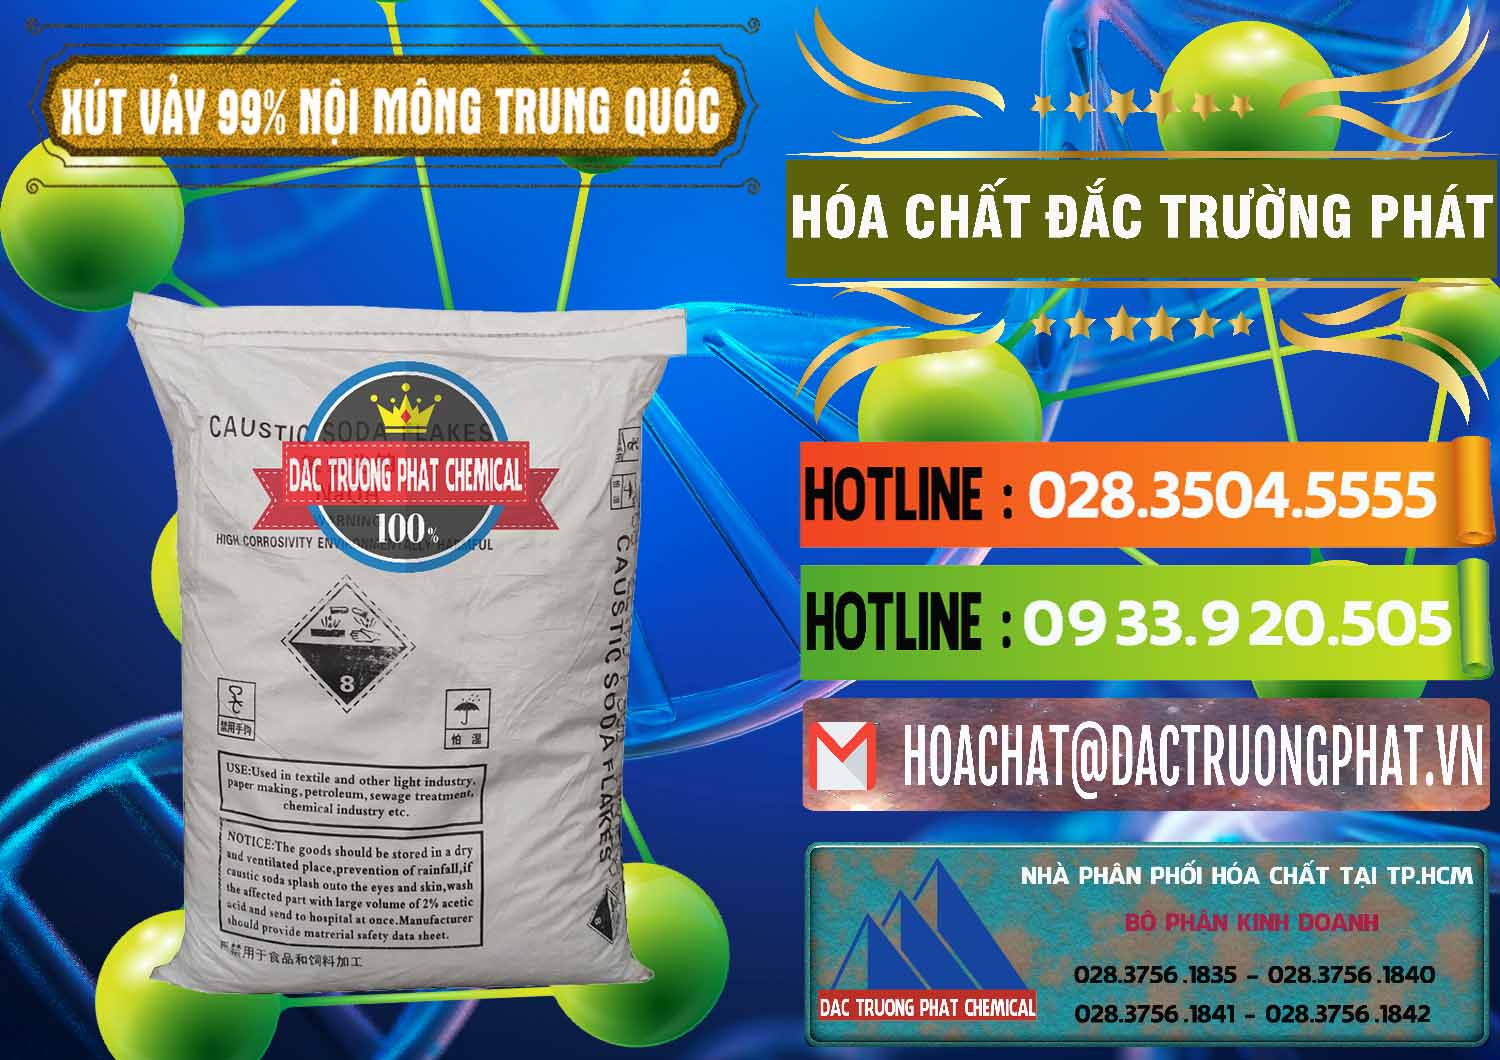 Bán - cung cấp Xút Vảy - NaOH Vảy 99% Nội Mông Trung Quốc China - 0228 - Nơi bán - cung cấp hóa chất tại TP.HCM - cungcaphoachat.com.vn